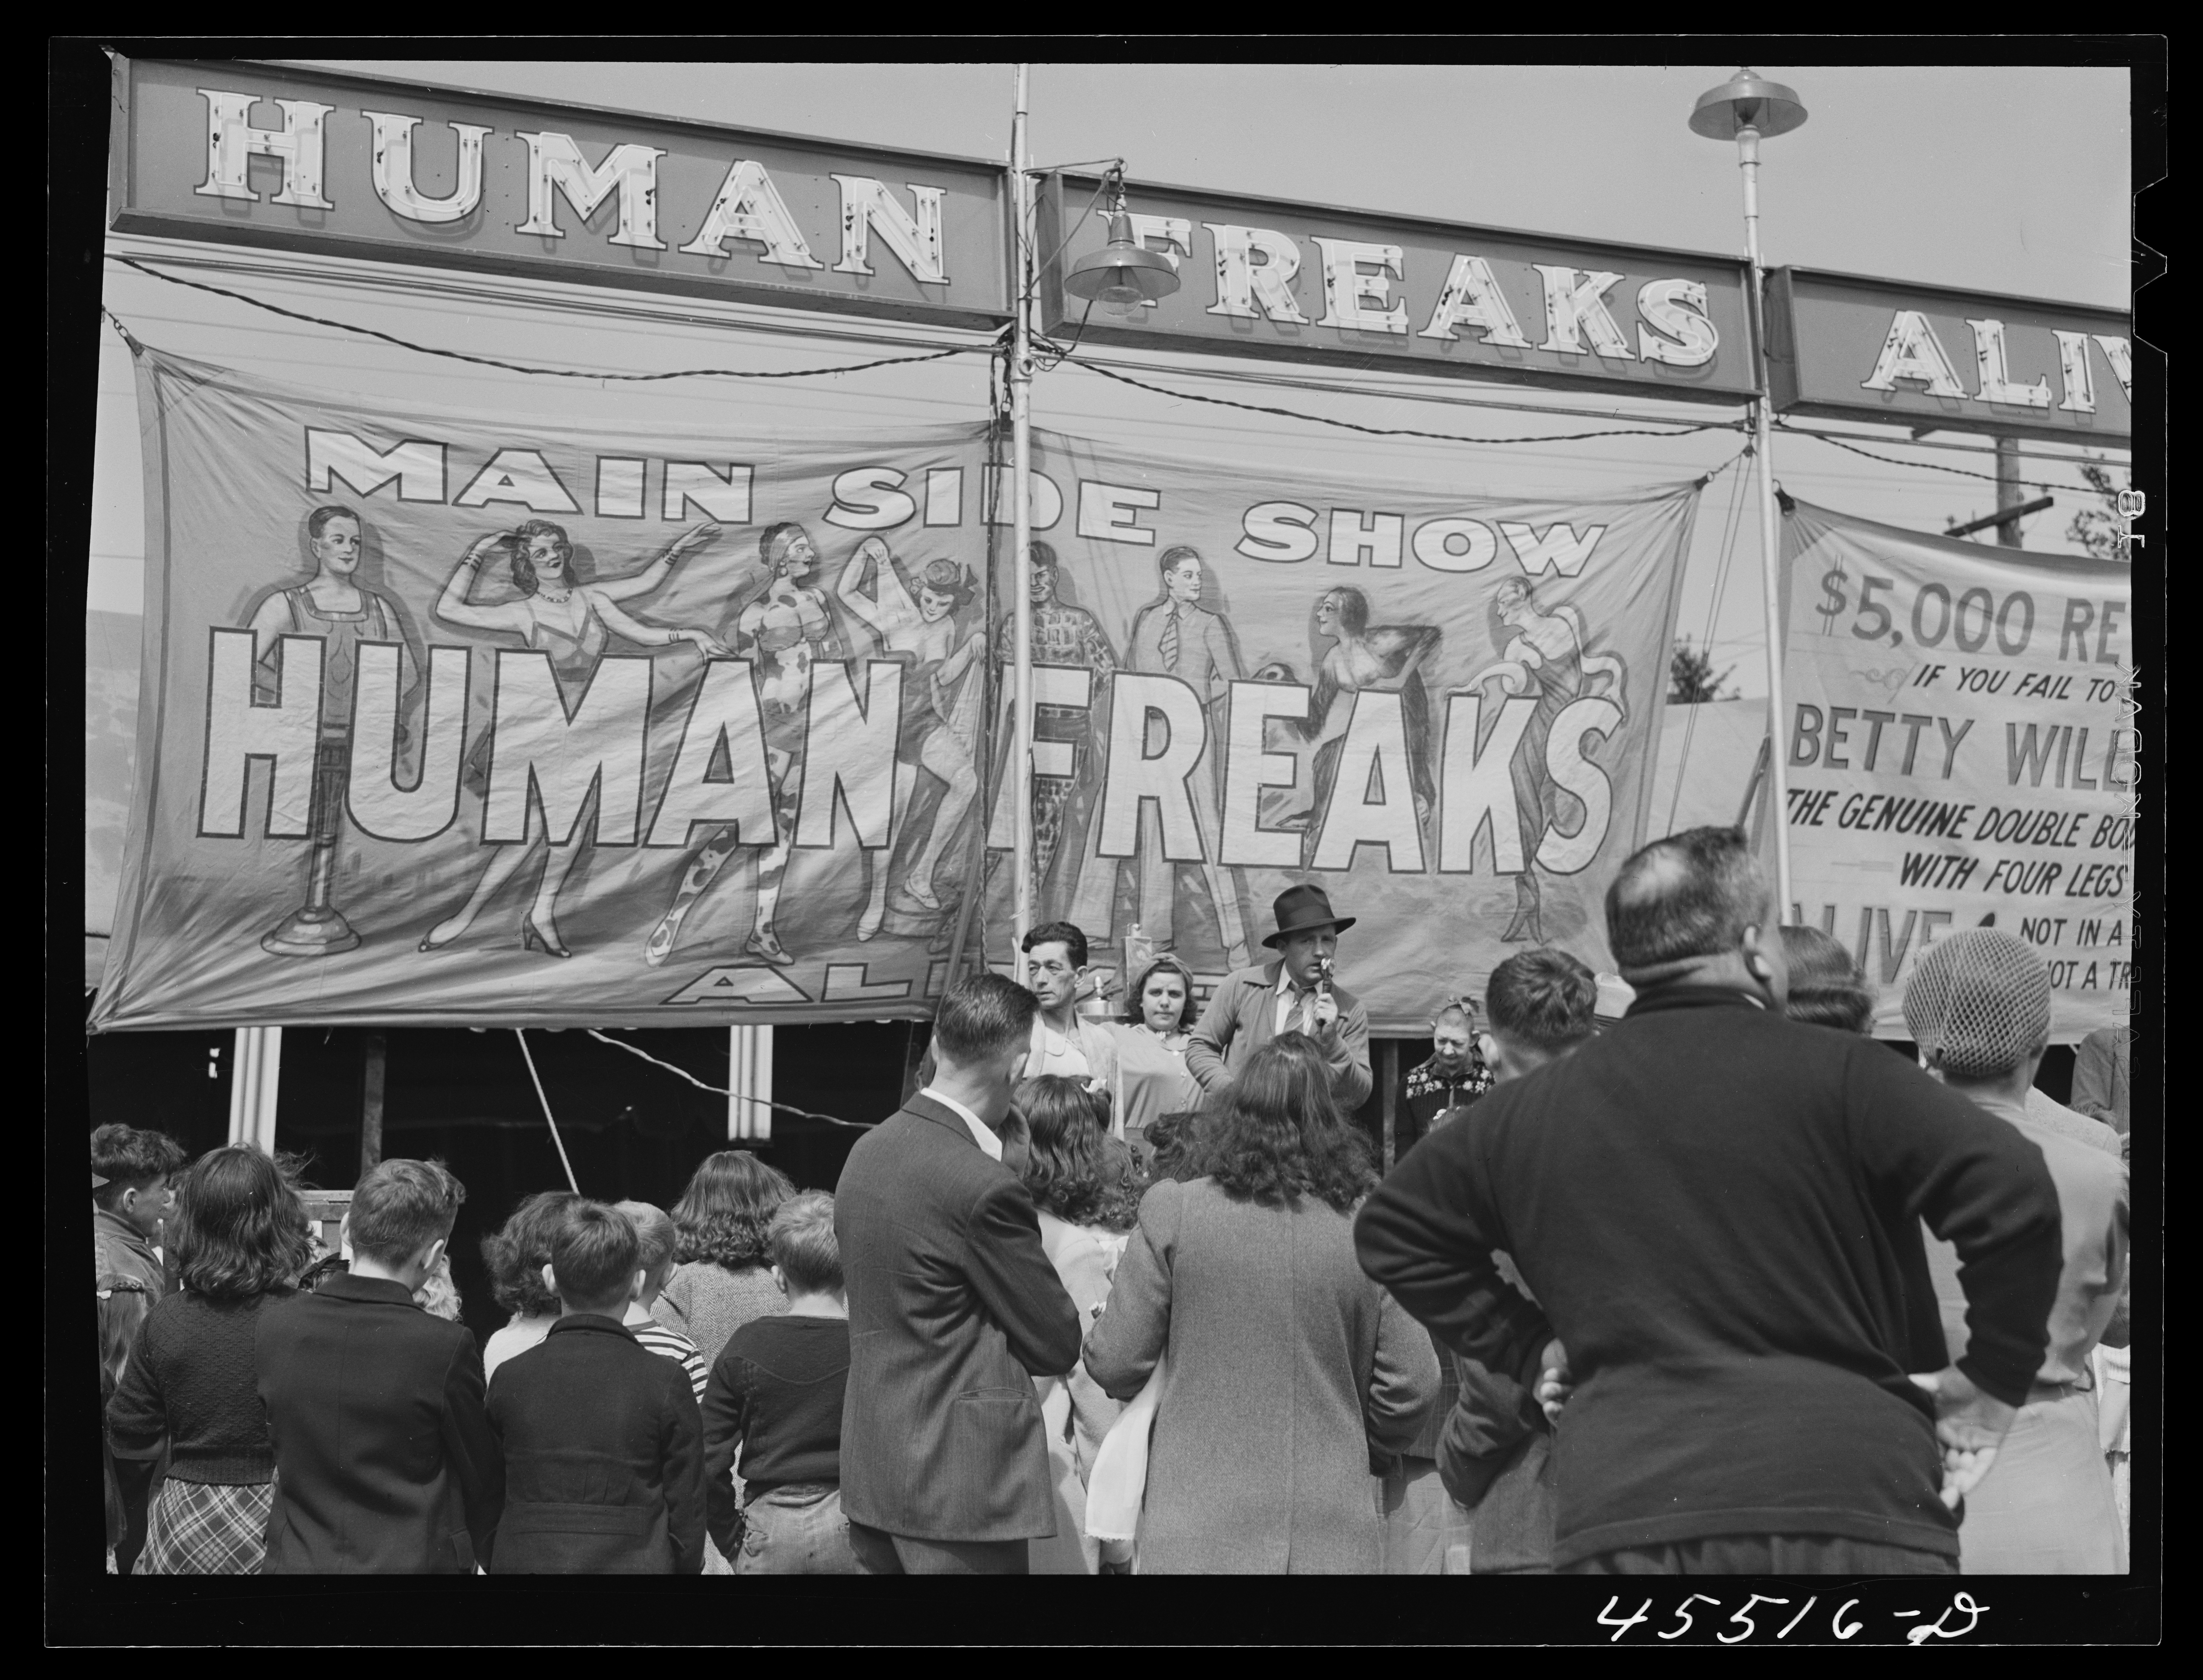 Freak_show_1941.jpg